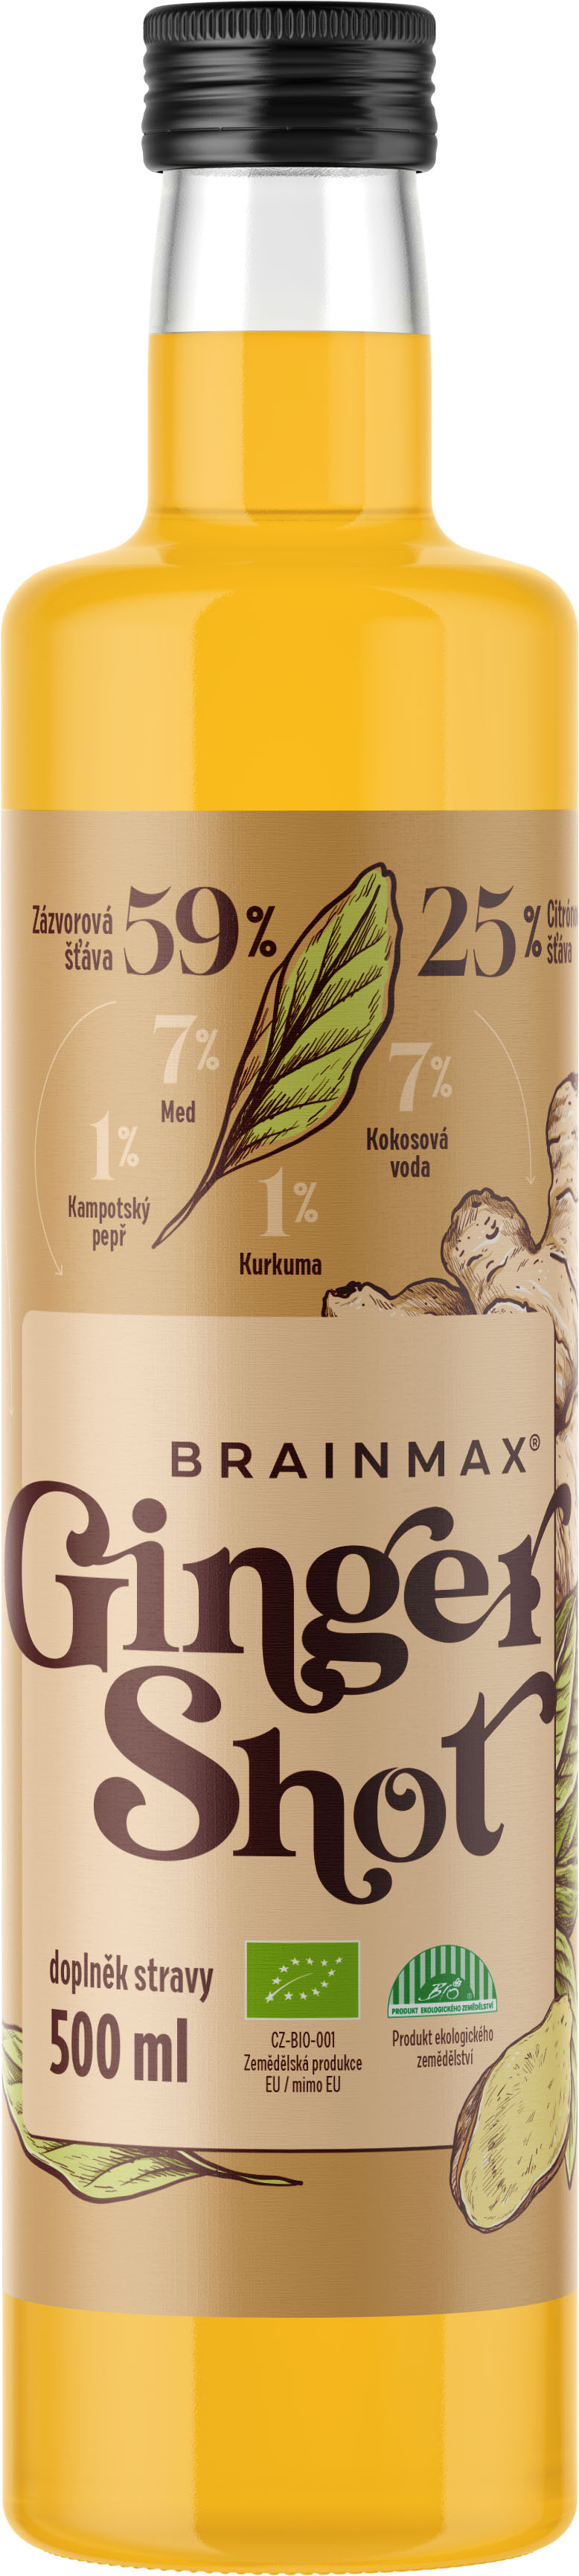 BrainMax Pure Ginger Shot, zázvorová štáva s kurkumou, BIO Objem: 500 ml Šťáva ze zázvoru s kurkumou, medem, kokosovou vodou a kampotským pepřem, *CZ-BIO-001 certifikát